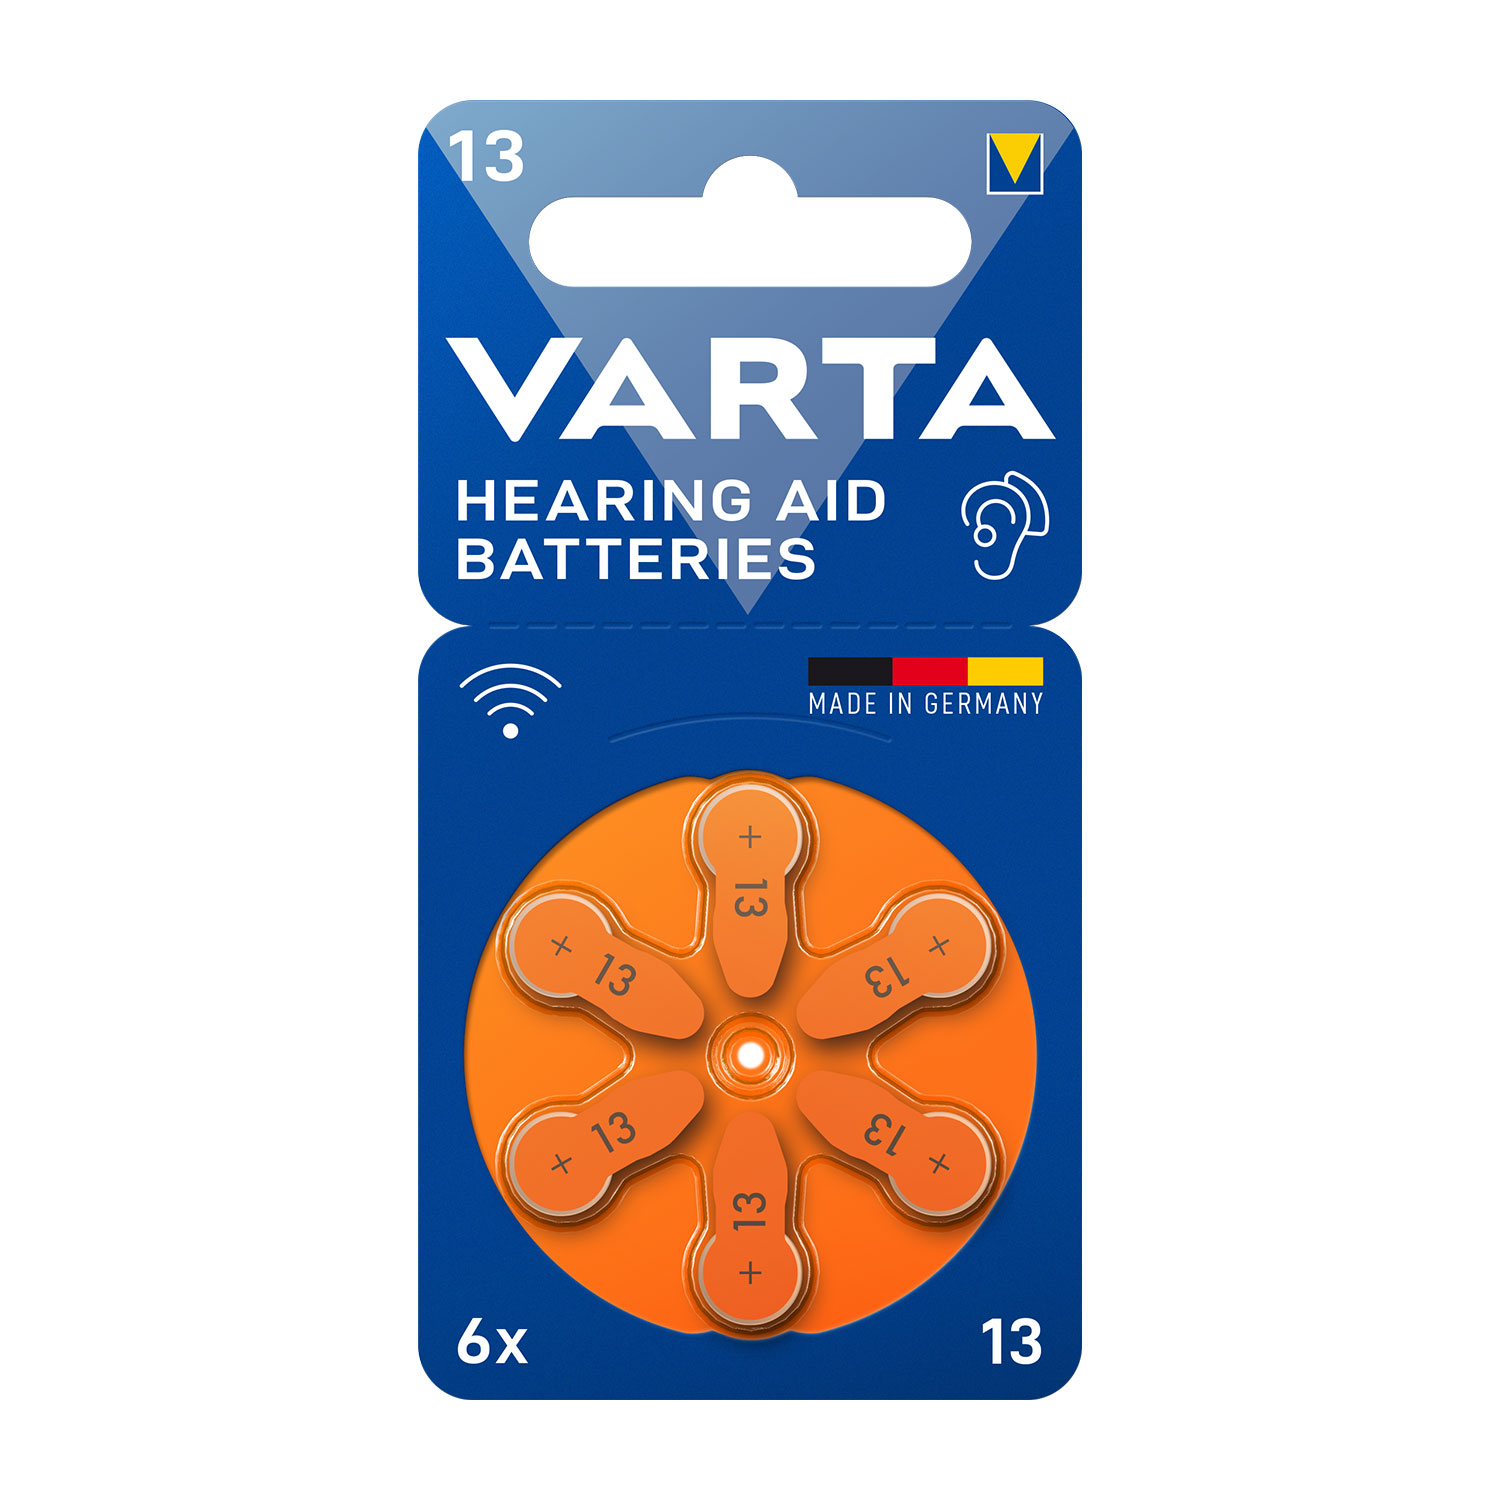 Varta 13 hearing aid battery